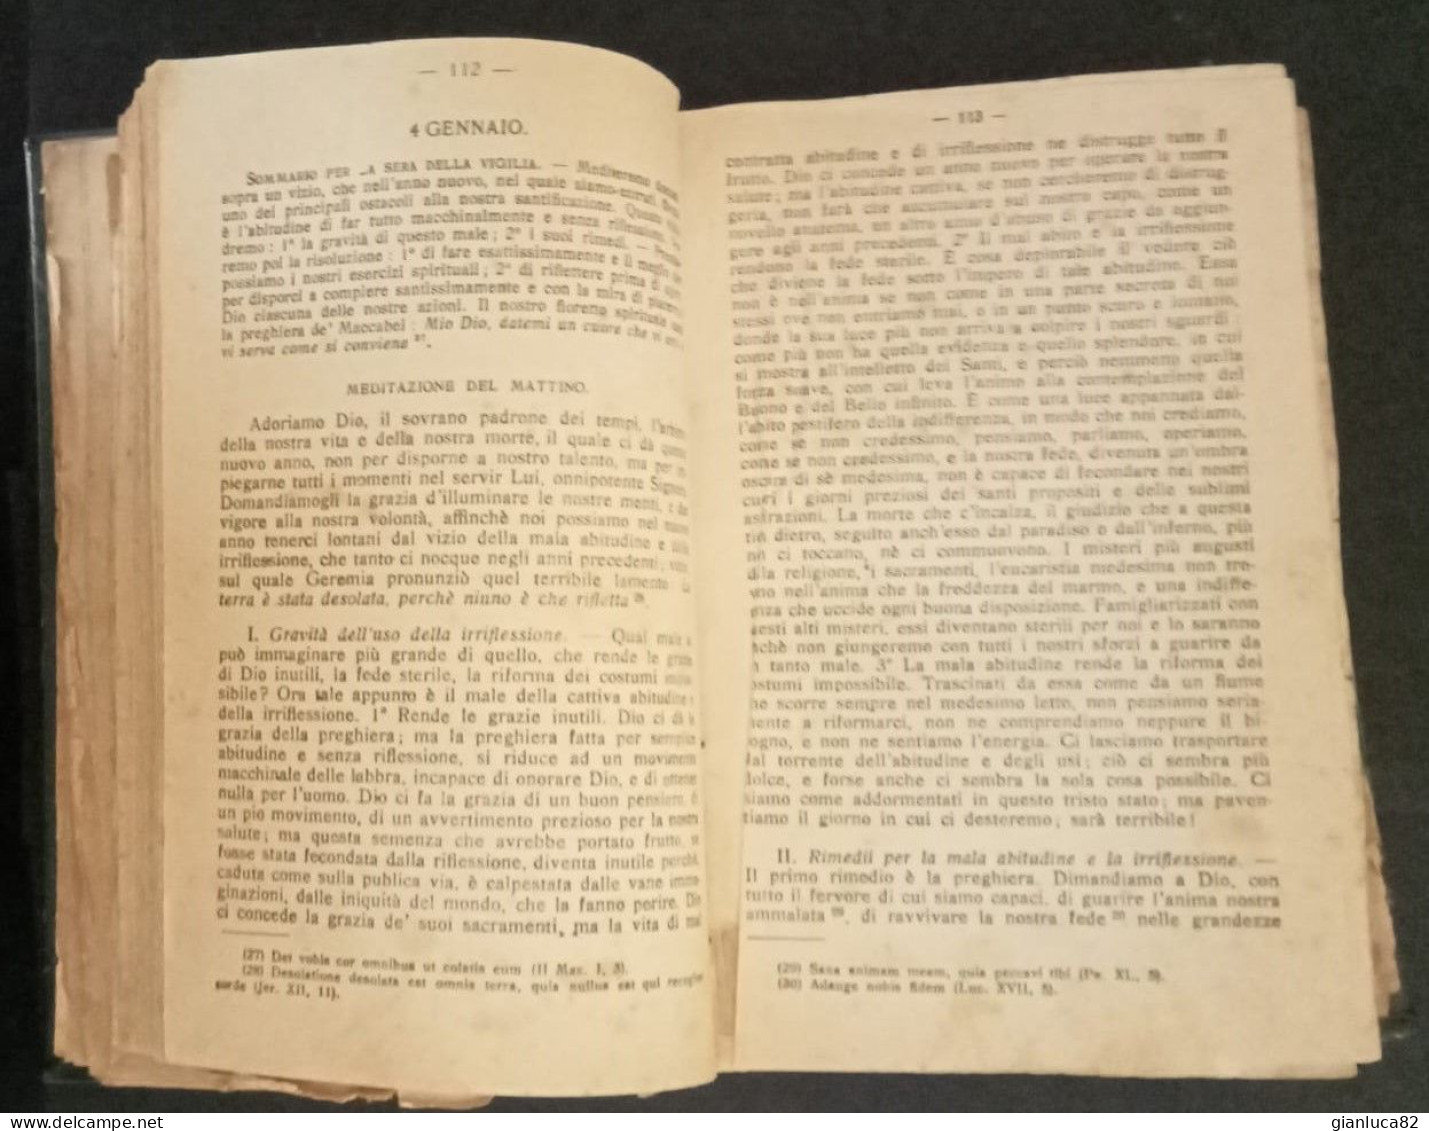 Libro Antico Meditazioni Dell’Hamon Torino 1918 Offertissima (628) Come Da Foto Meditazioni Tutti I Giorni Dell’anno - Old Books